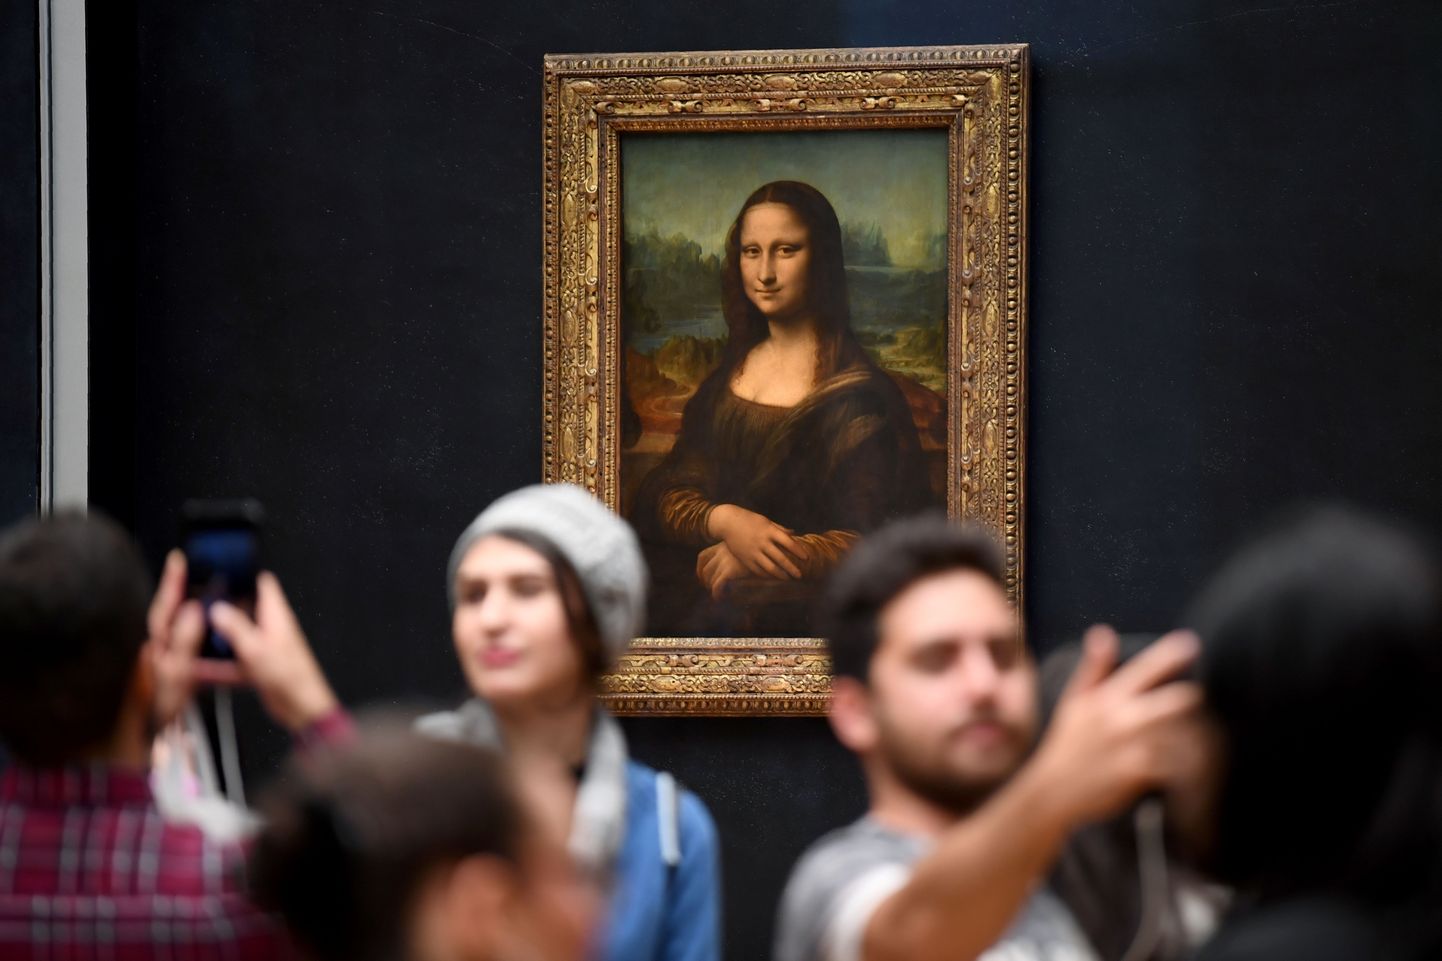 Itaalia renessansikunstniku Leonardo da Vinci maal «Mona Lisa», mis asub Pariisi Louvre'i muuseumis. Foto on tehtud oktoobris 2019